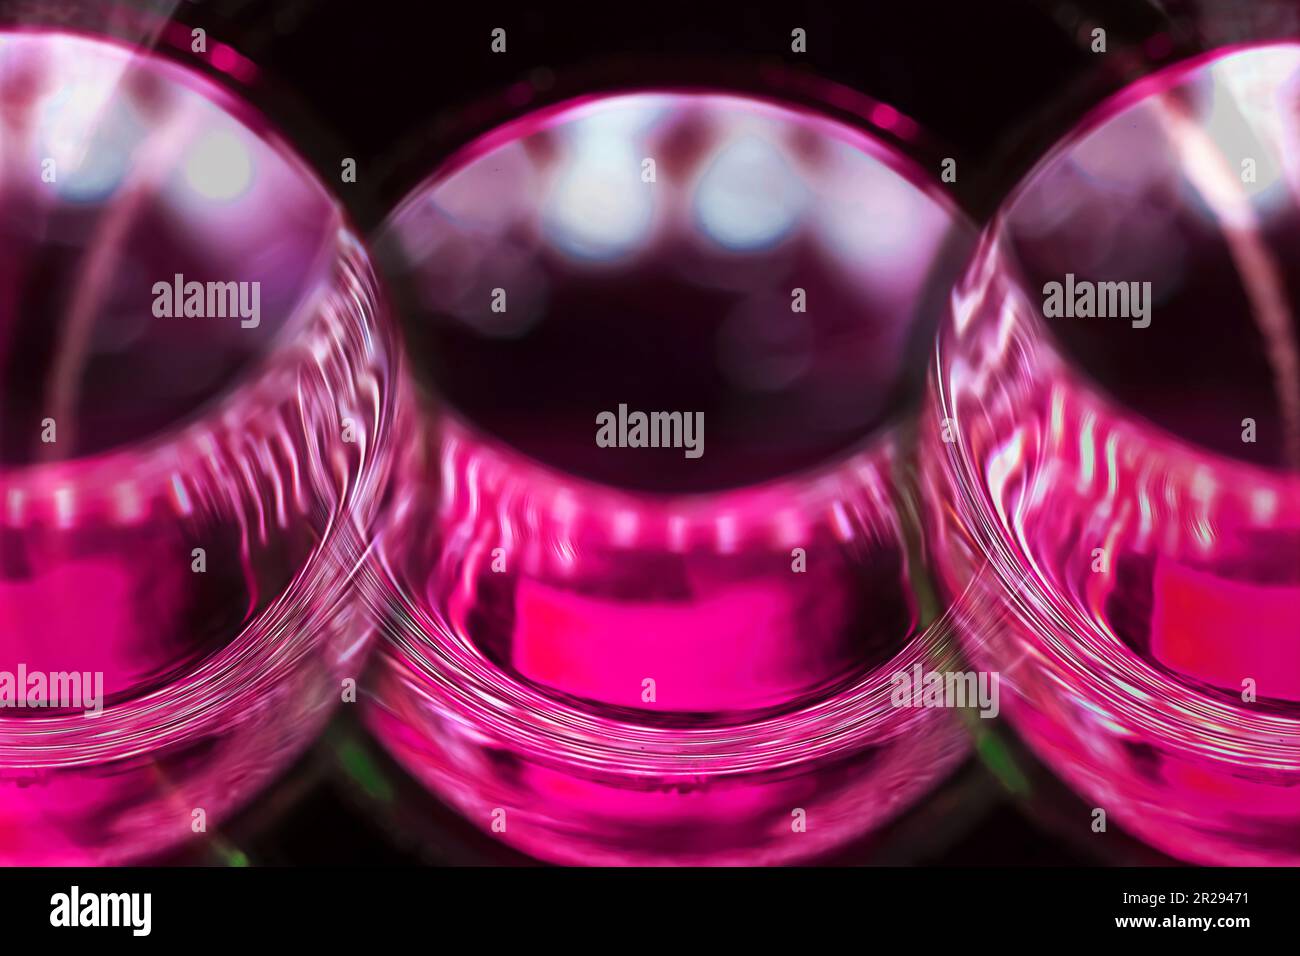 Kunst um der Kunst willen. Makrobilder eines Glashalses mit pinkfarbenen Lichteffekten und interessanten Bearbeitungen, für Kunstdrucke und abstrakte Kunst, Stockfoto